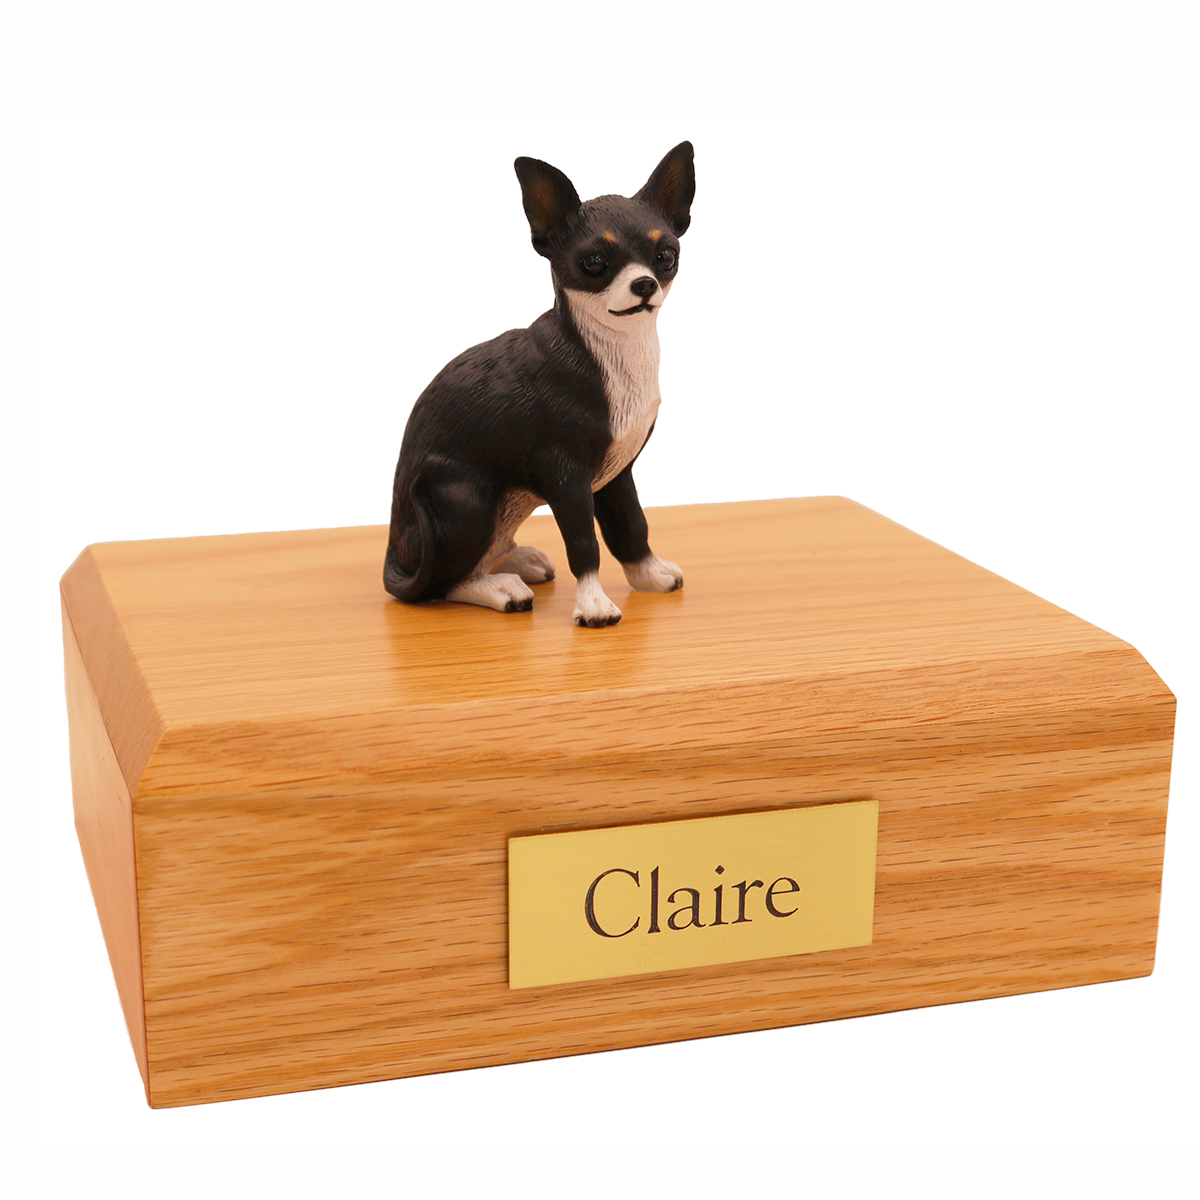 Dog, Chihuahua, Black/White - Figurine Urn